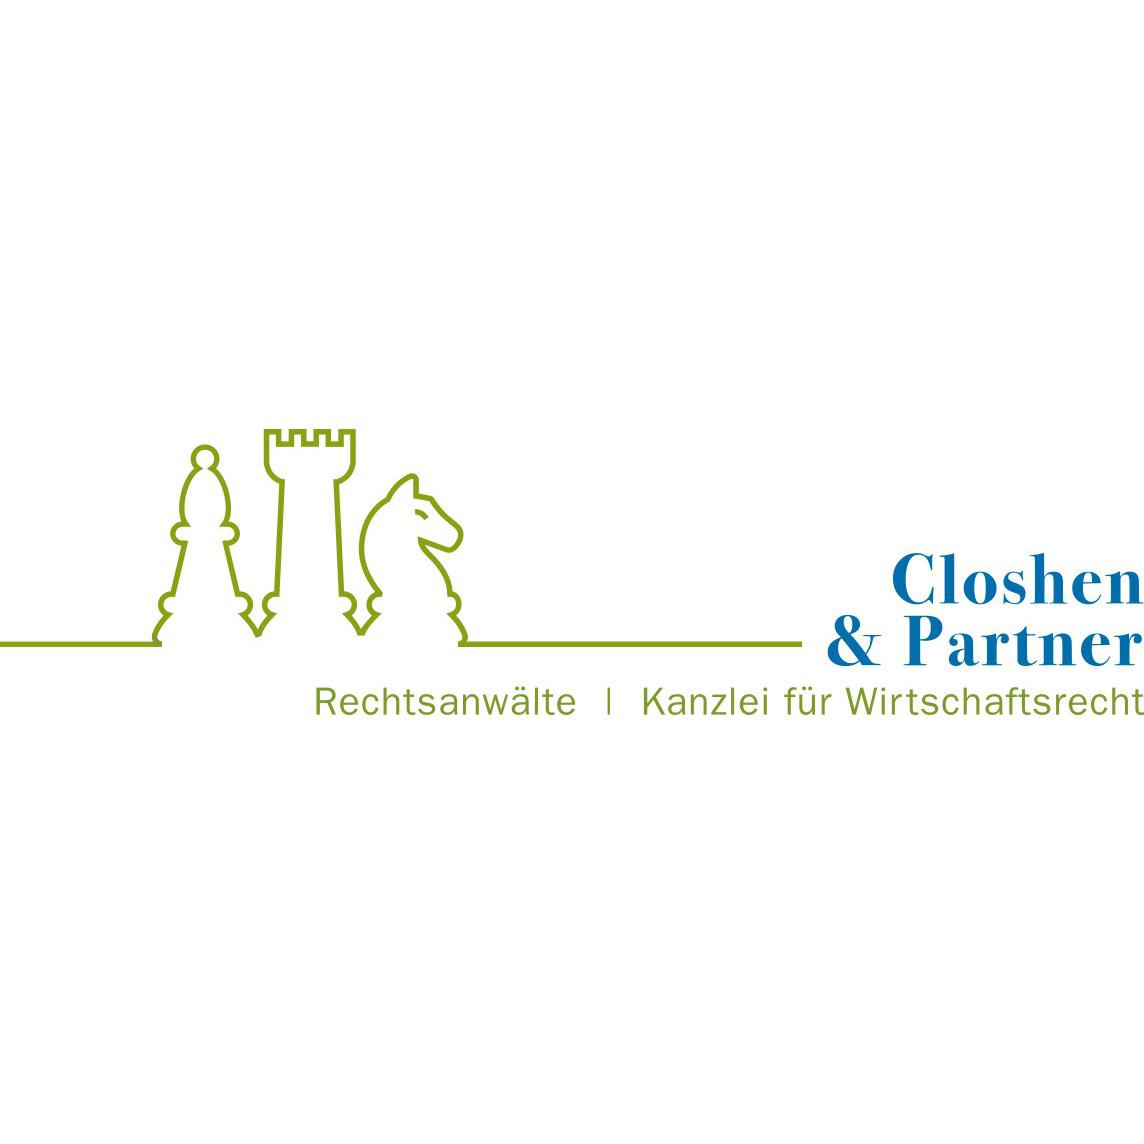 Rechtsanwälte Closhen & Partner in Bad Kreuznach - Logo